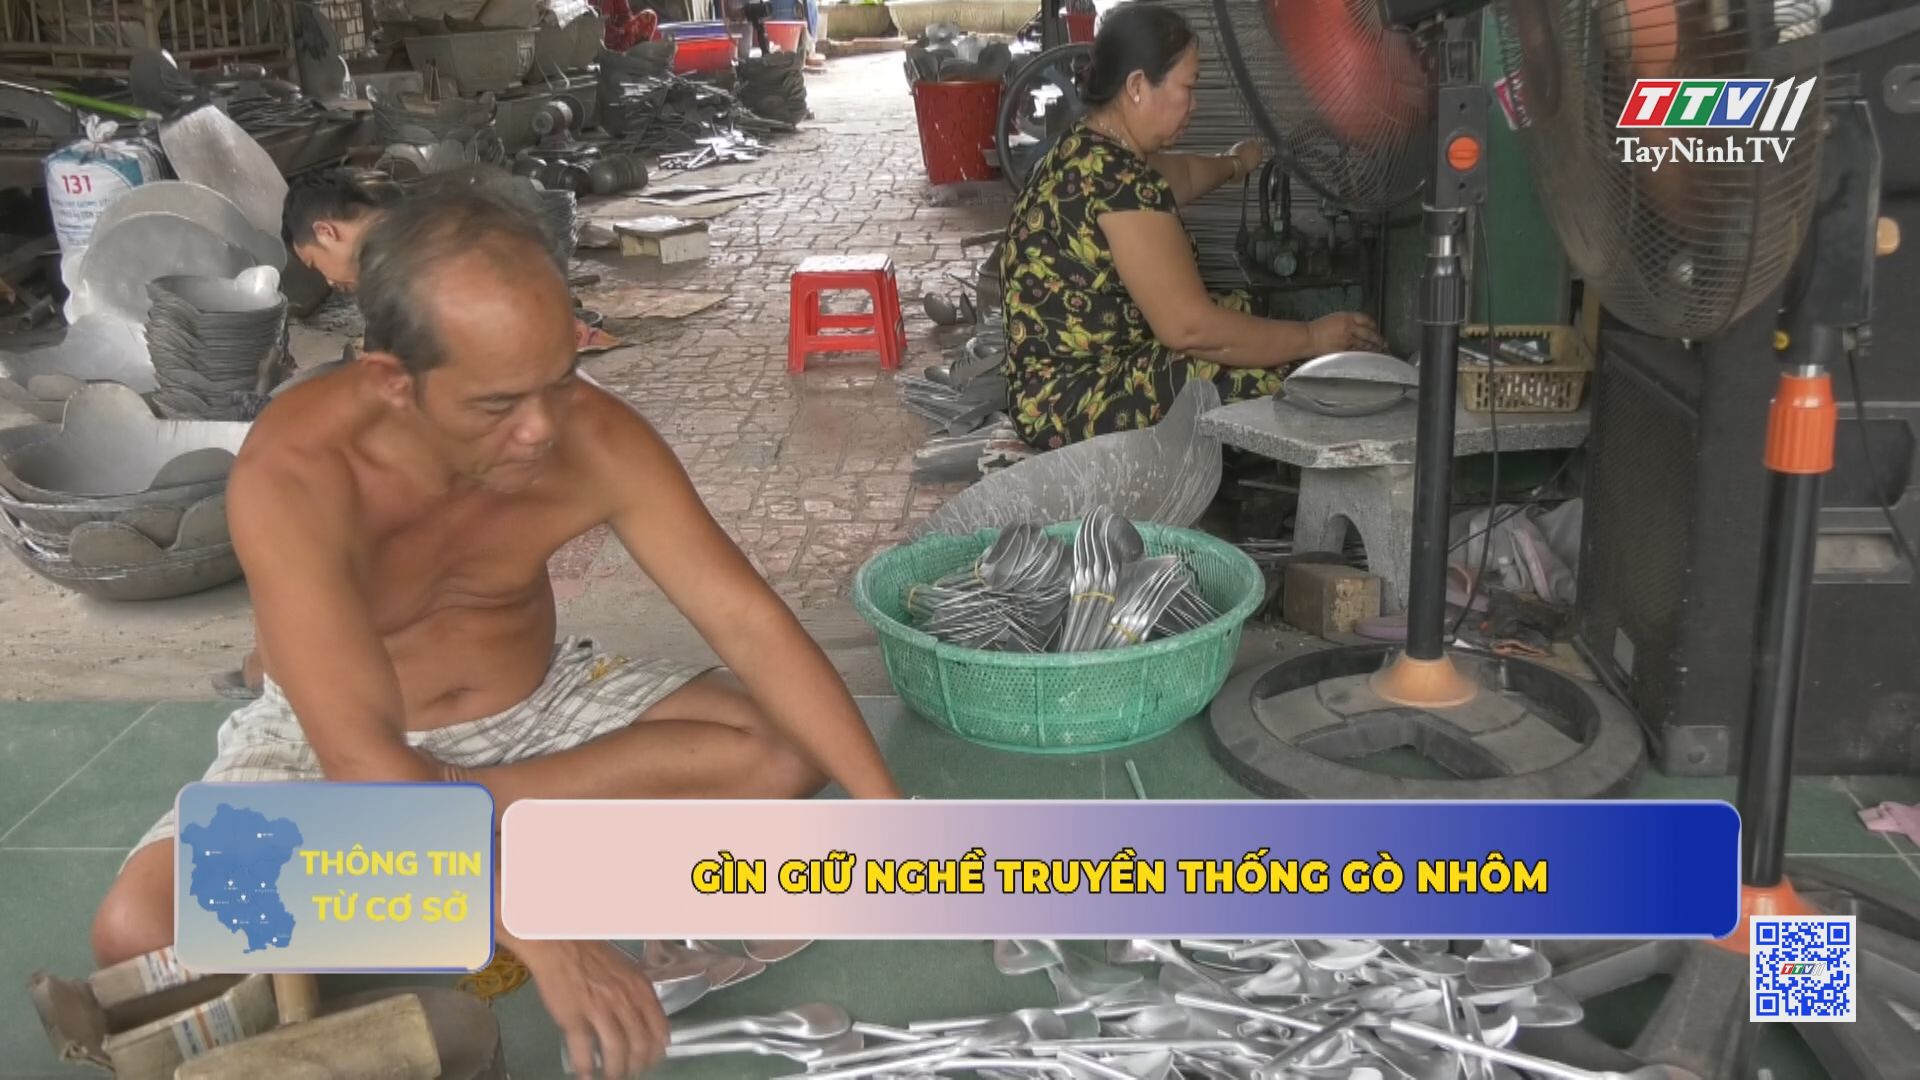 Gìn giữ nghề truyền thống gò nhôm | Thông tin từ cơ sở | TayNinhTV